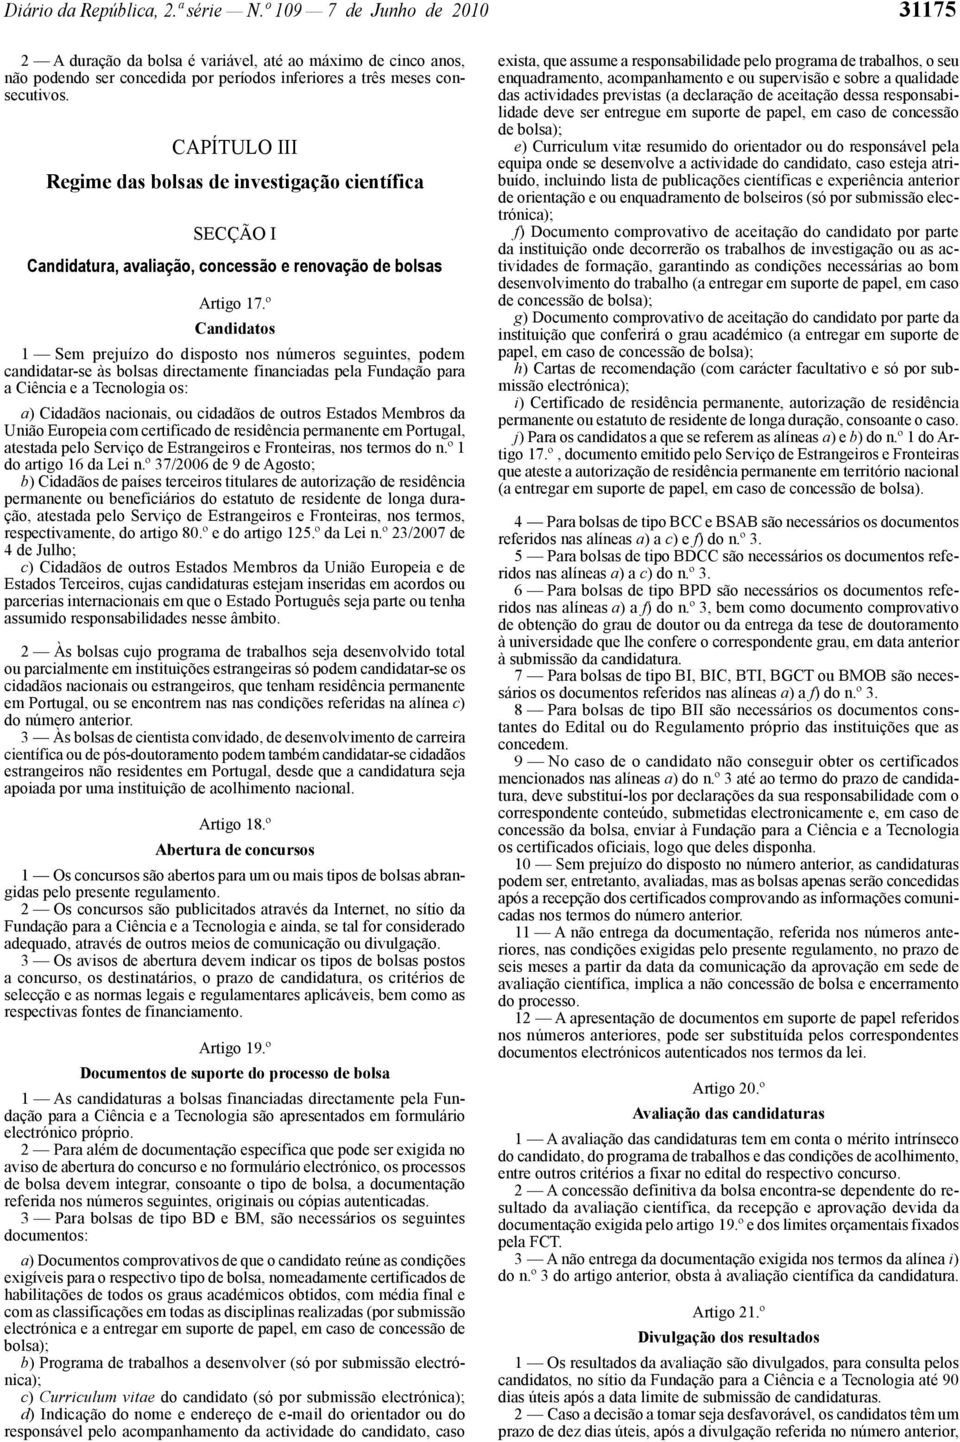 científica SECÇÃO I Candidatura, avaliação, concessão e renovação de bolsas Artigo 17.